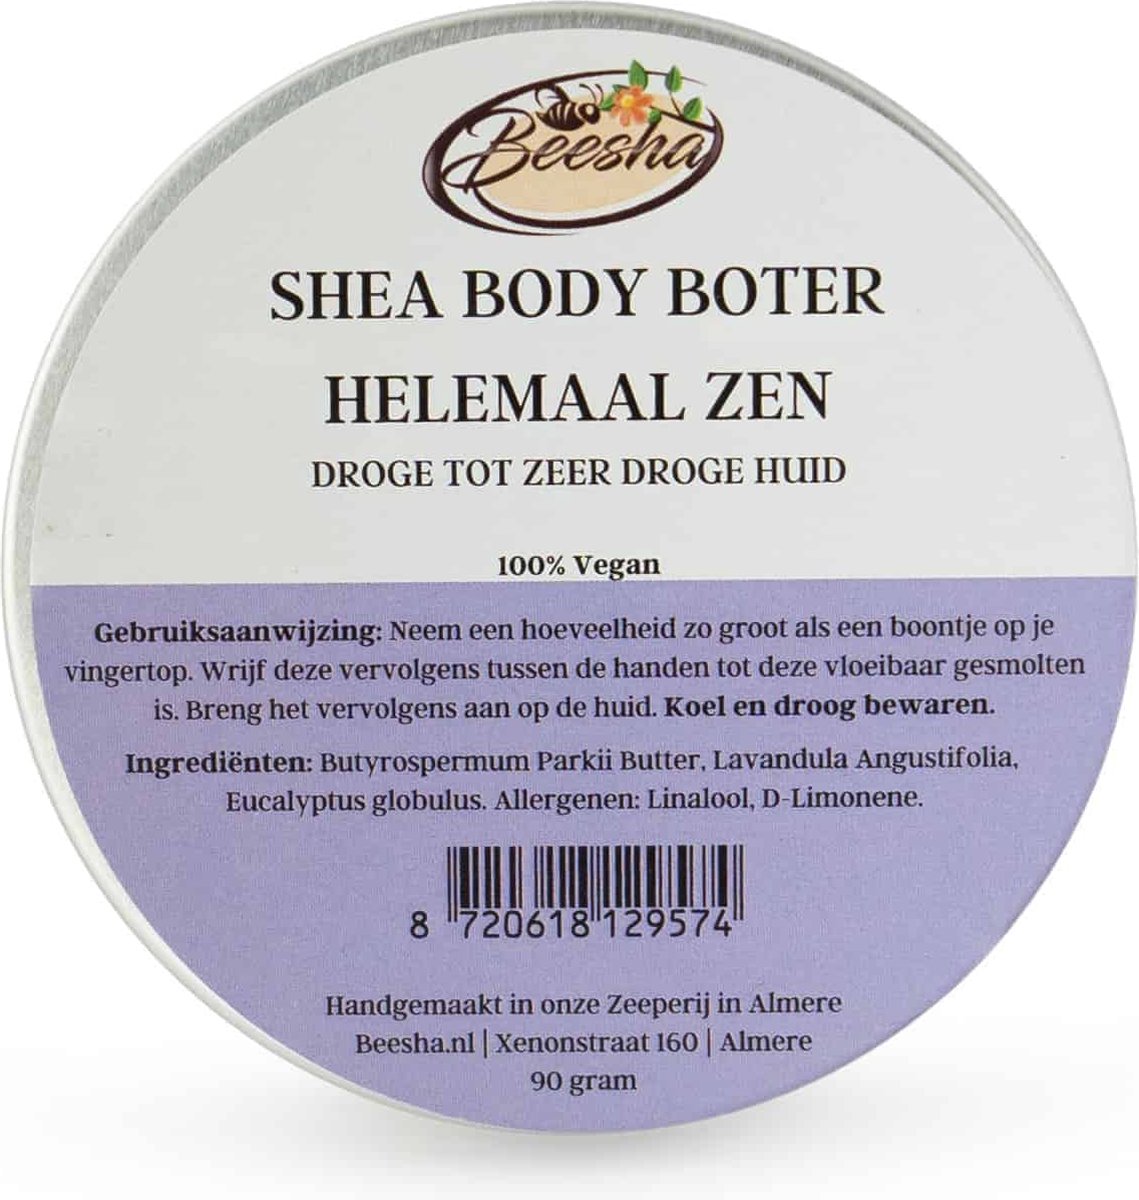 Beesha Shea Body Boter Helemaal Zen